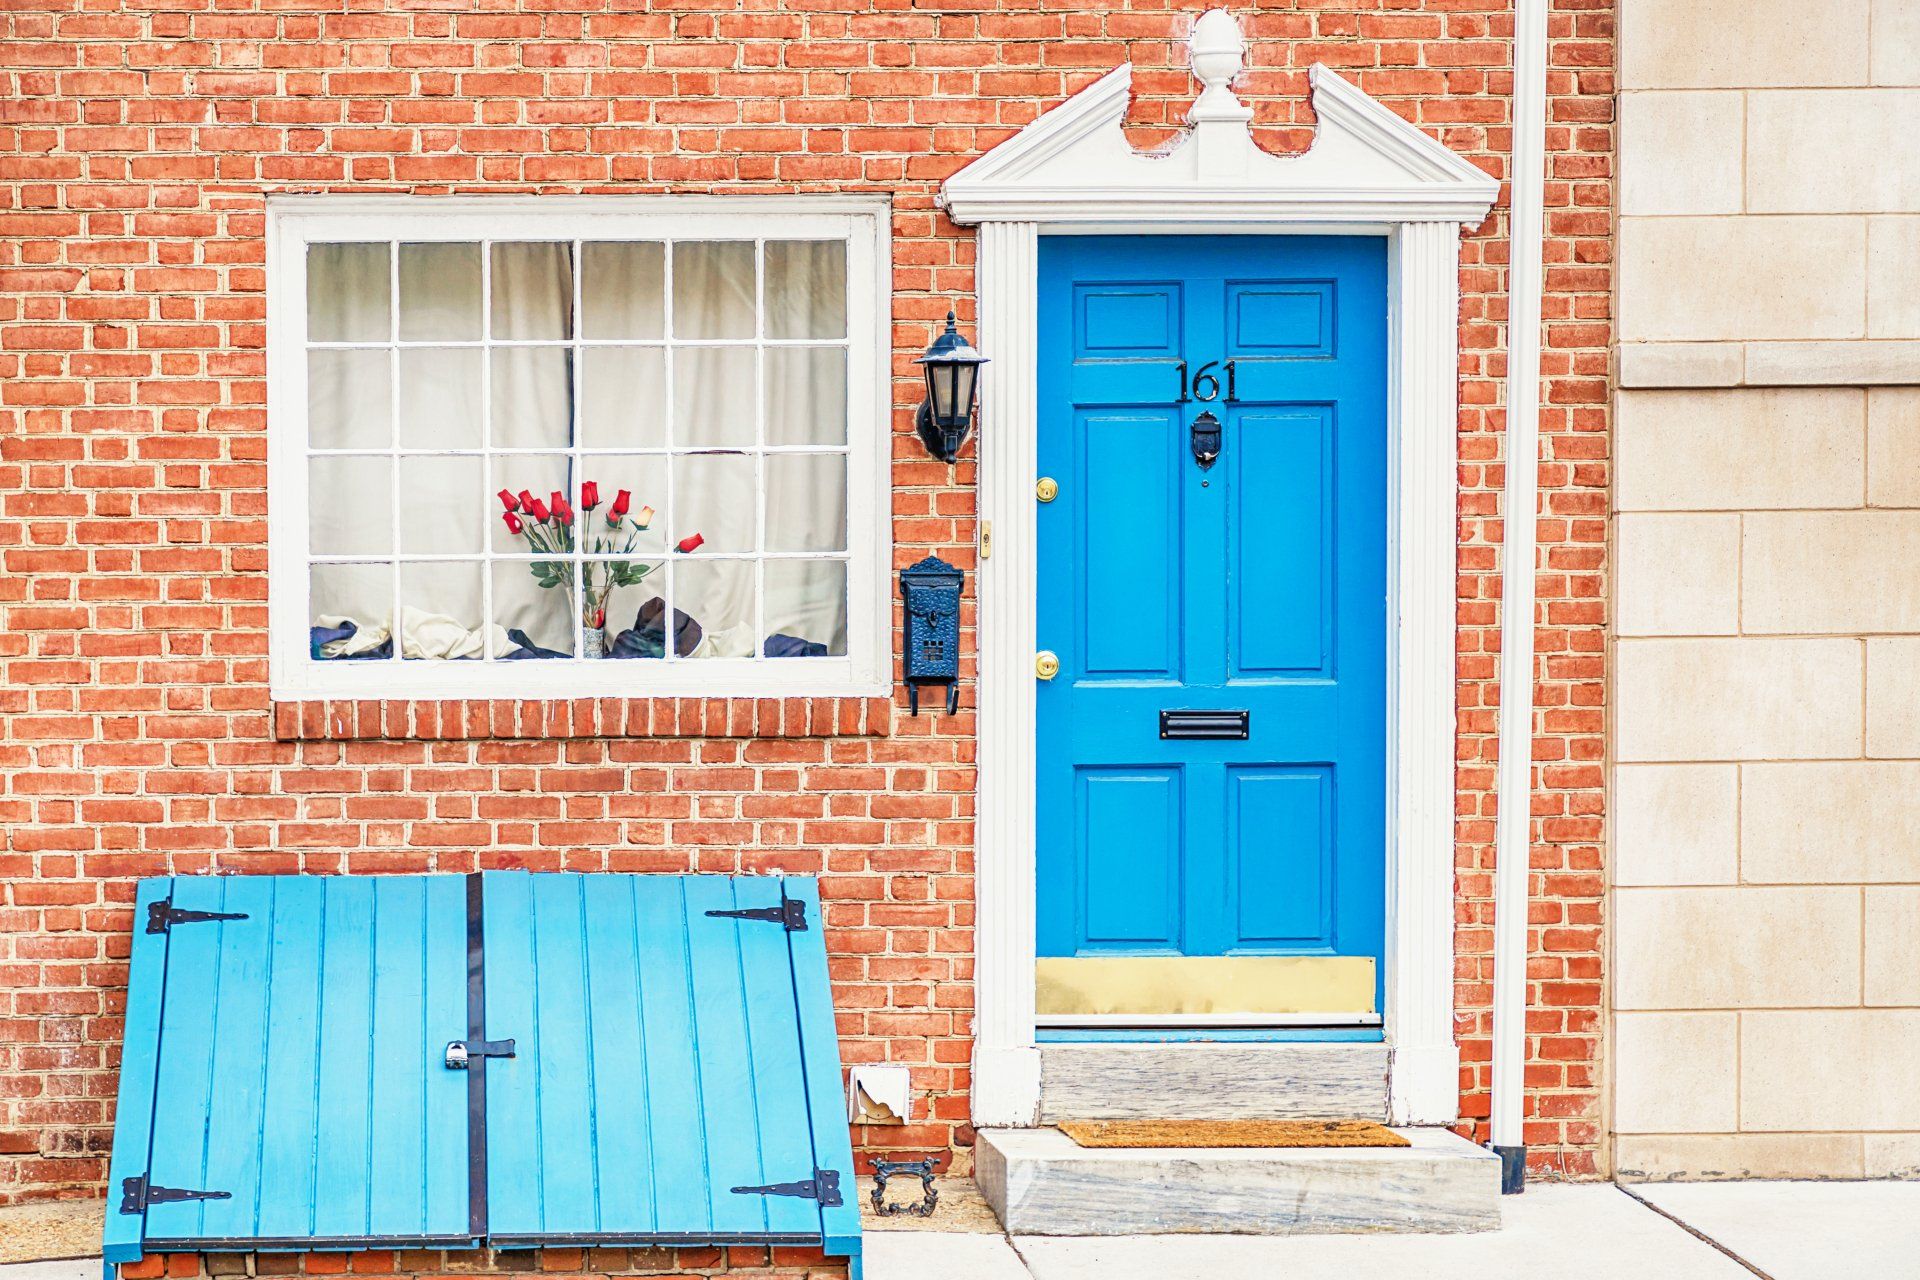 philadelphia brick home with blue door